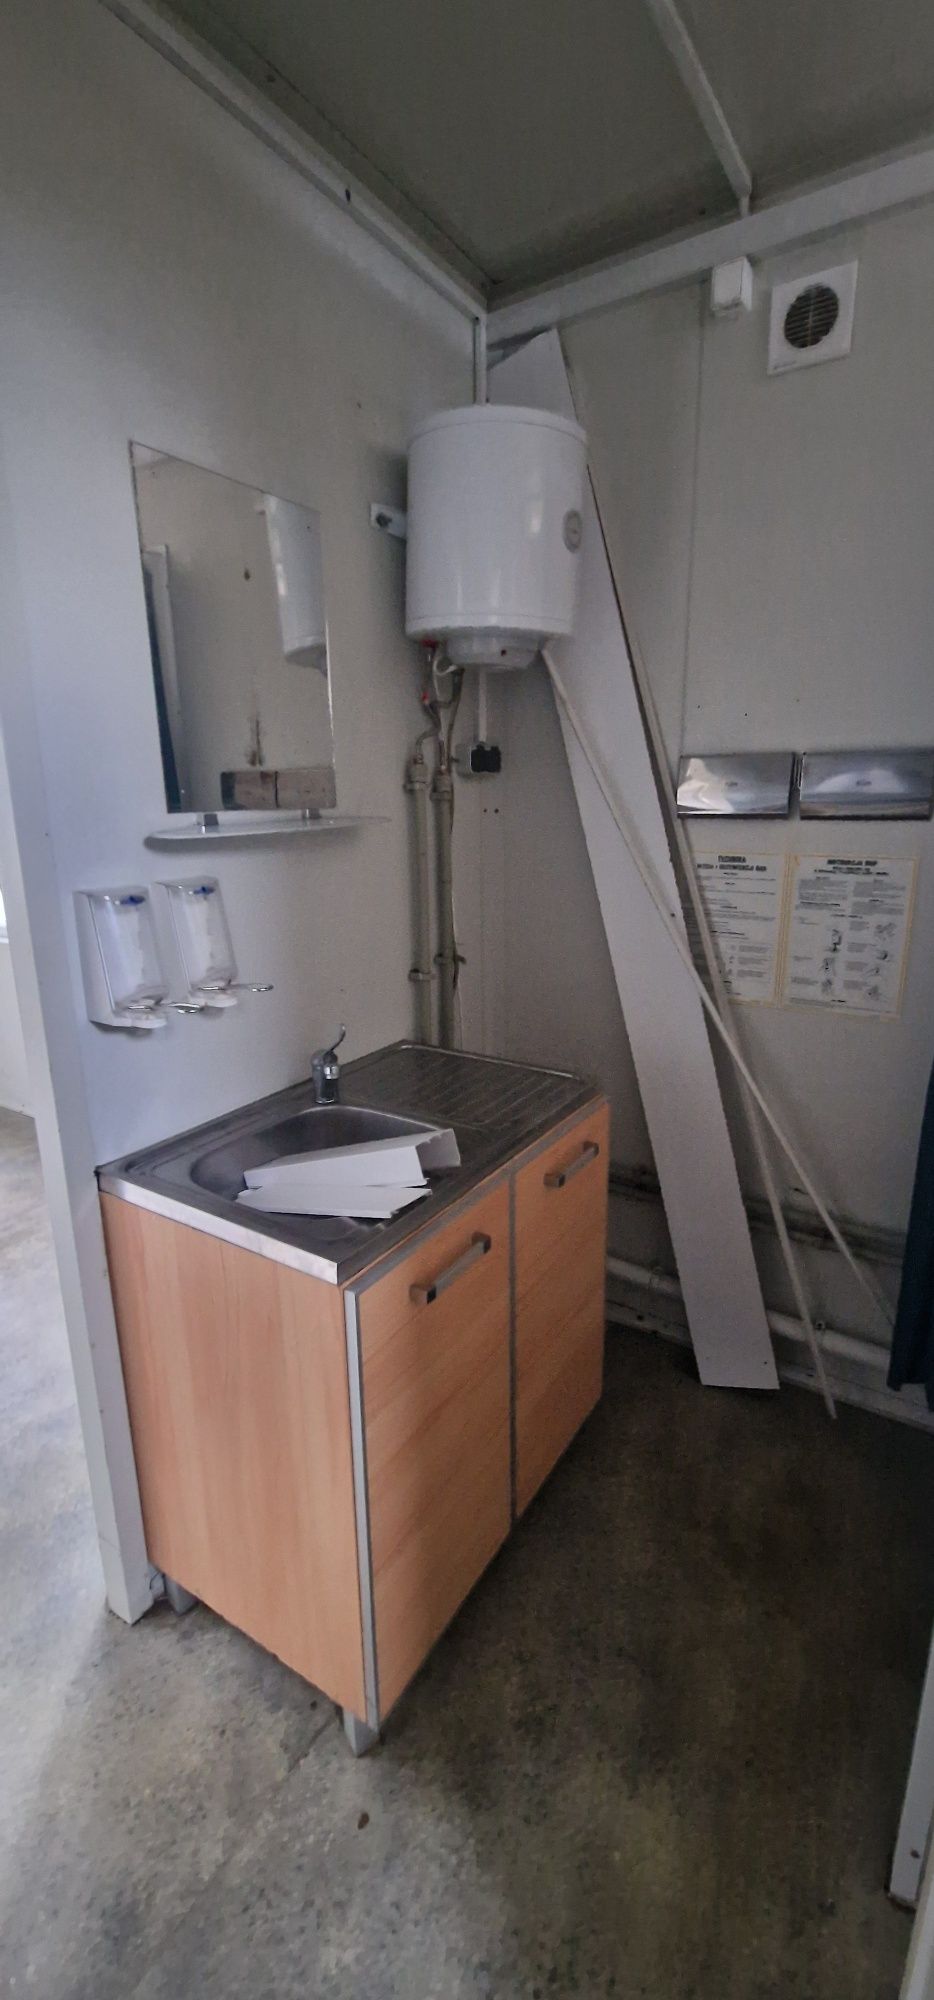 Kontener podwójny mieszkalny DUO łazienka zaplecze budowlane salka 36m